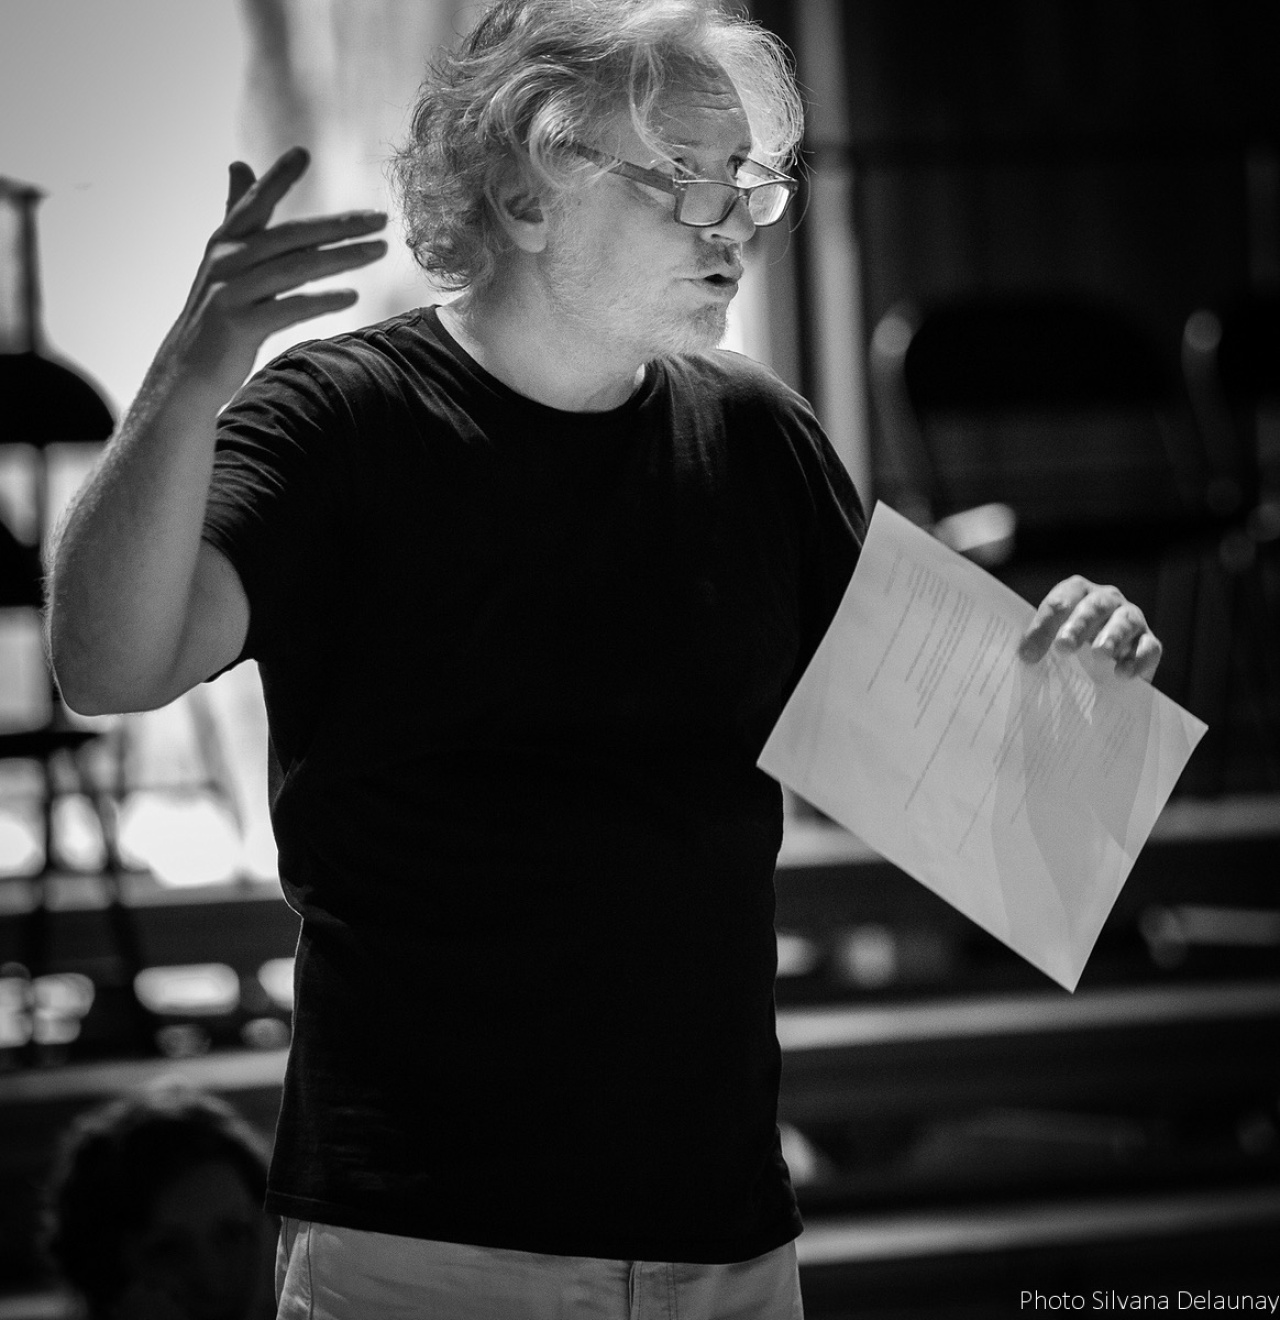 Schwarz-Weiß Foto von Jean Pierre Seyvos, ein Mann mit lockigen Haaren und Brille, er spricht und hält ein Blatt Papier in der Hand.